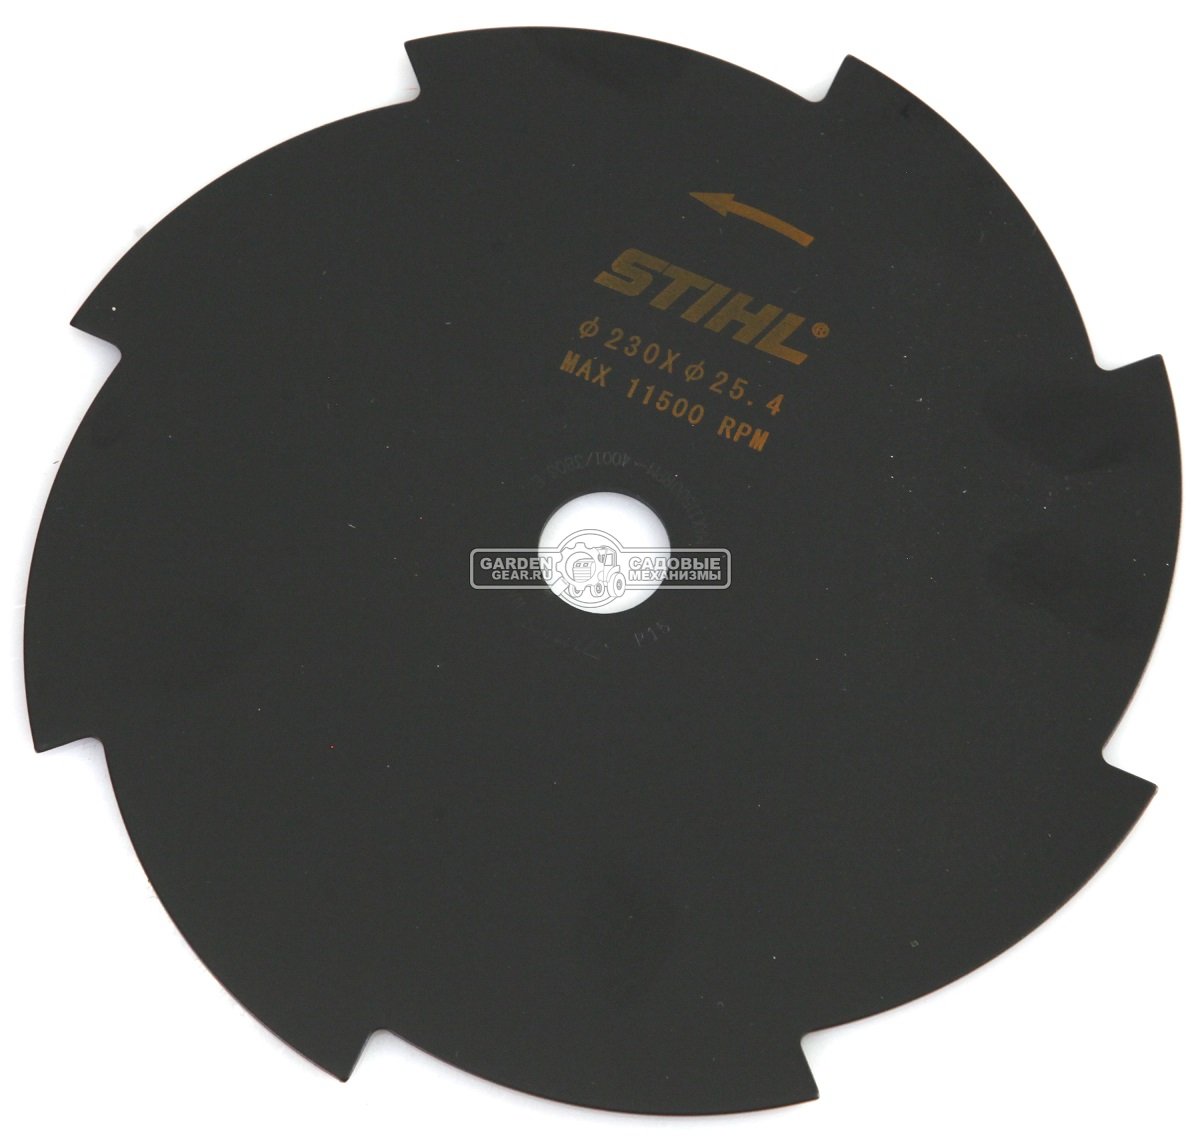 Режущий диск Stihl Grasscut 8Z 230 мм., для FS 55 - 250 / FR 131 T / FSA 90 / 130 для сухой травы и камыша (посадочный диаметр 25,4 мм.)